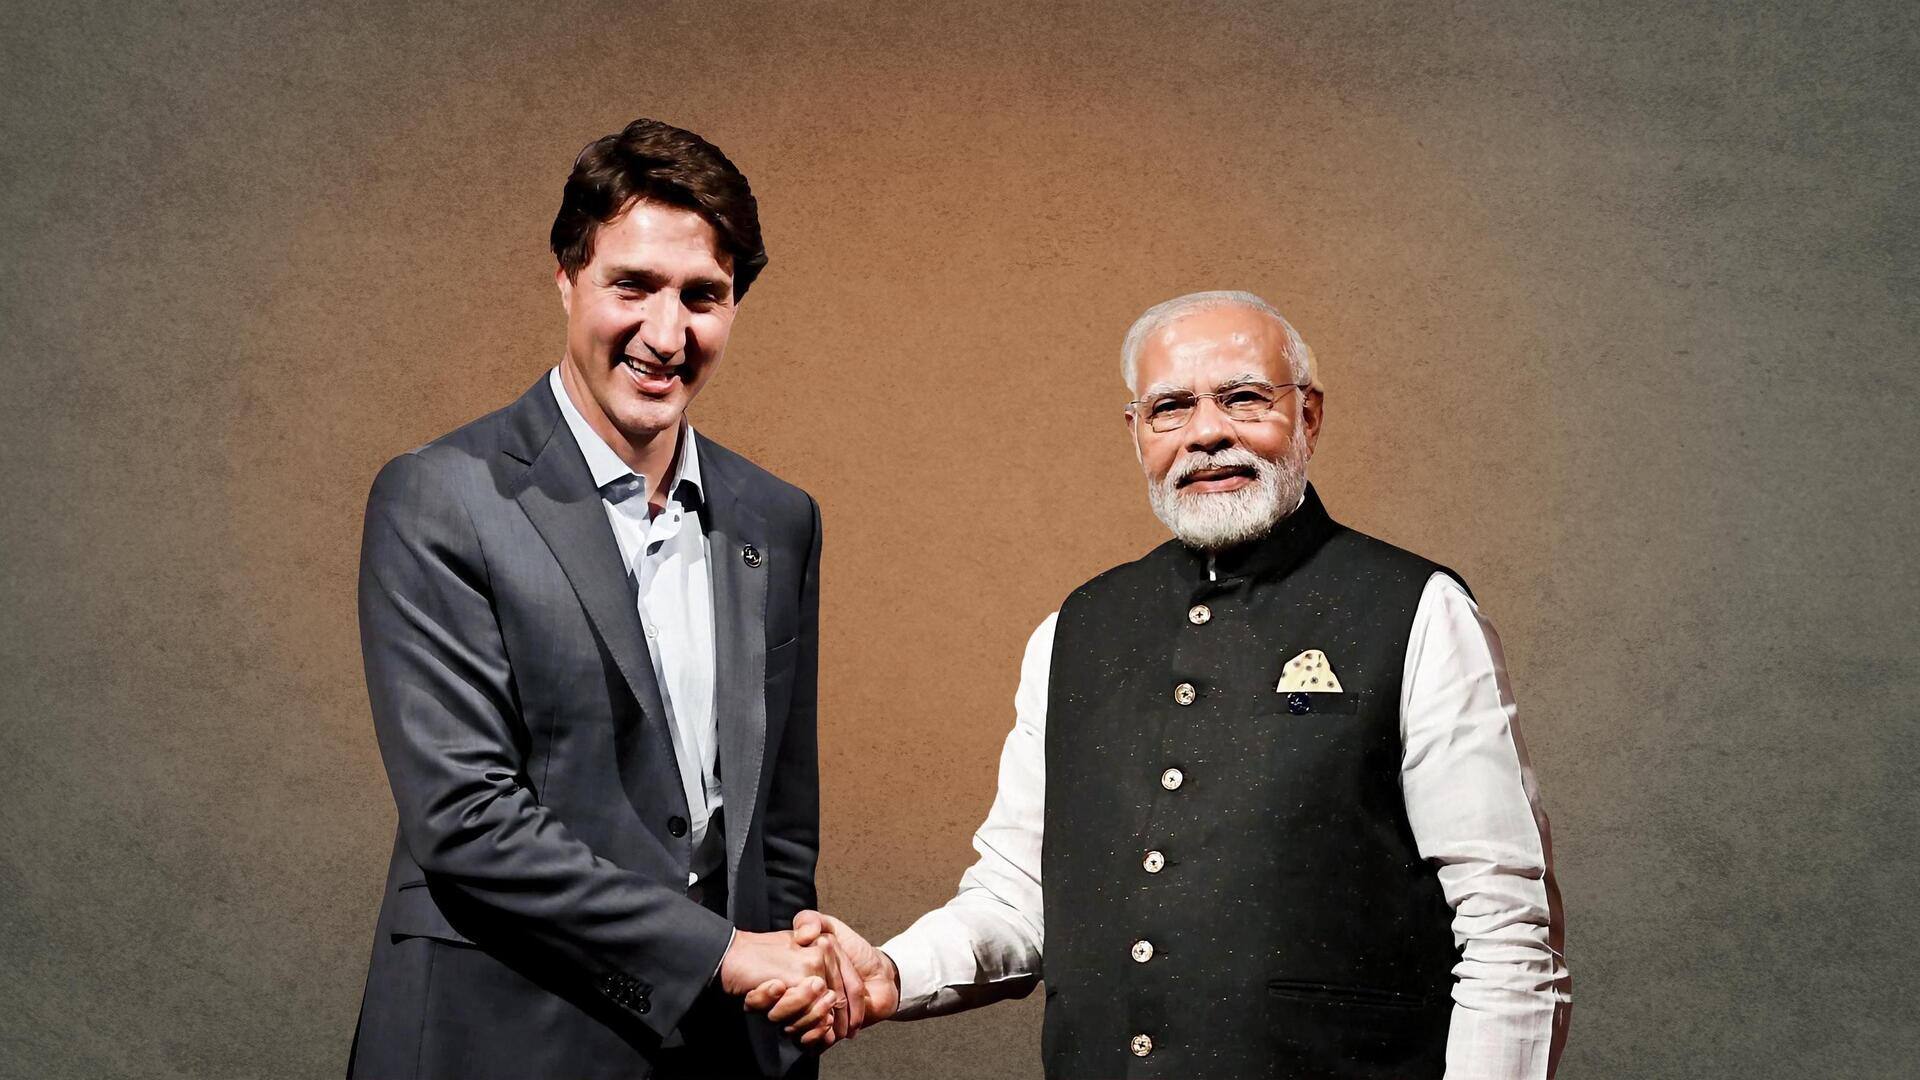 भारत ने 2 महीने बाद कनाडा के नागरिकों के लिए ई-वीजा सेवाएं बहाल कीं - रिपोर्ट